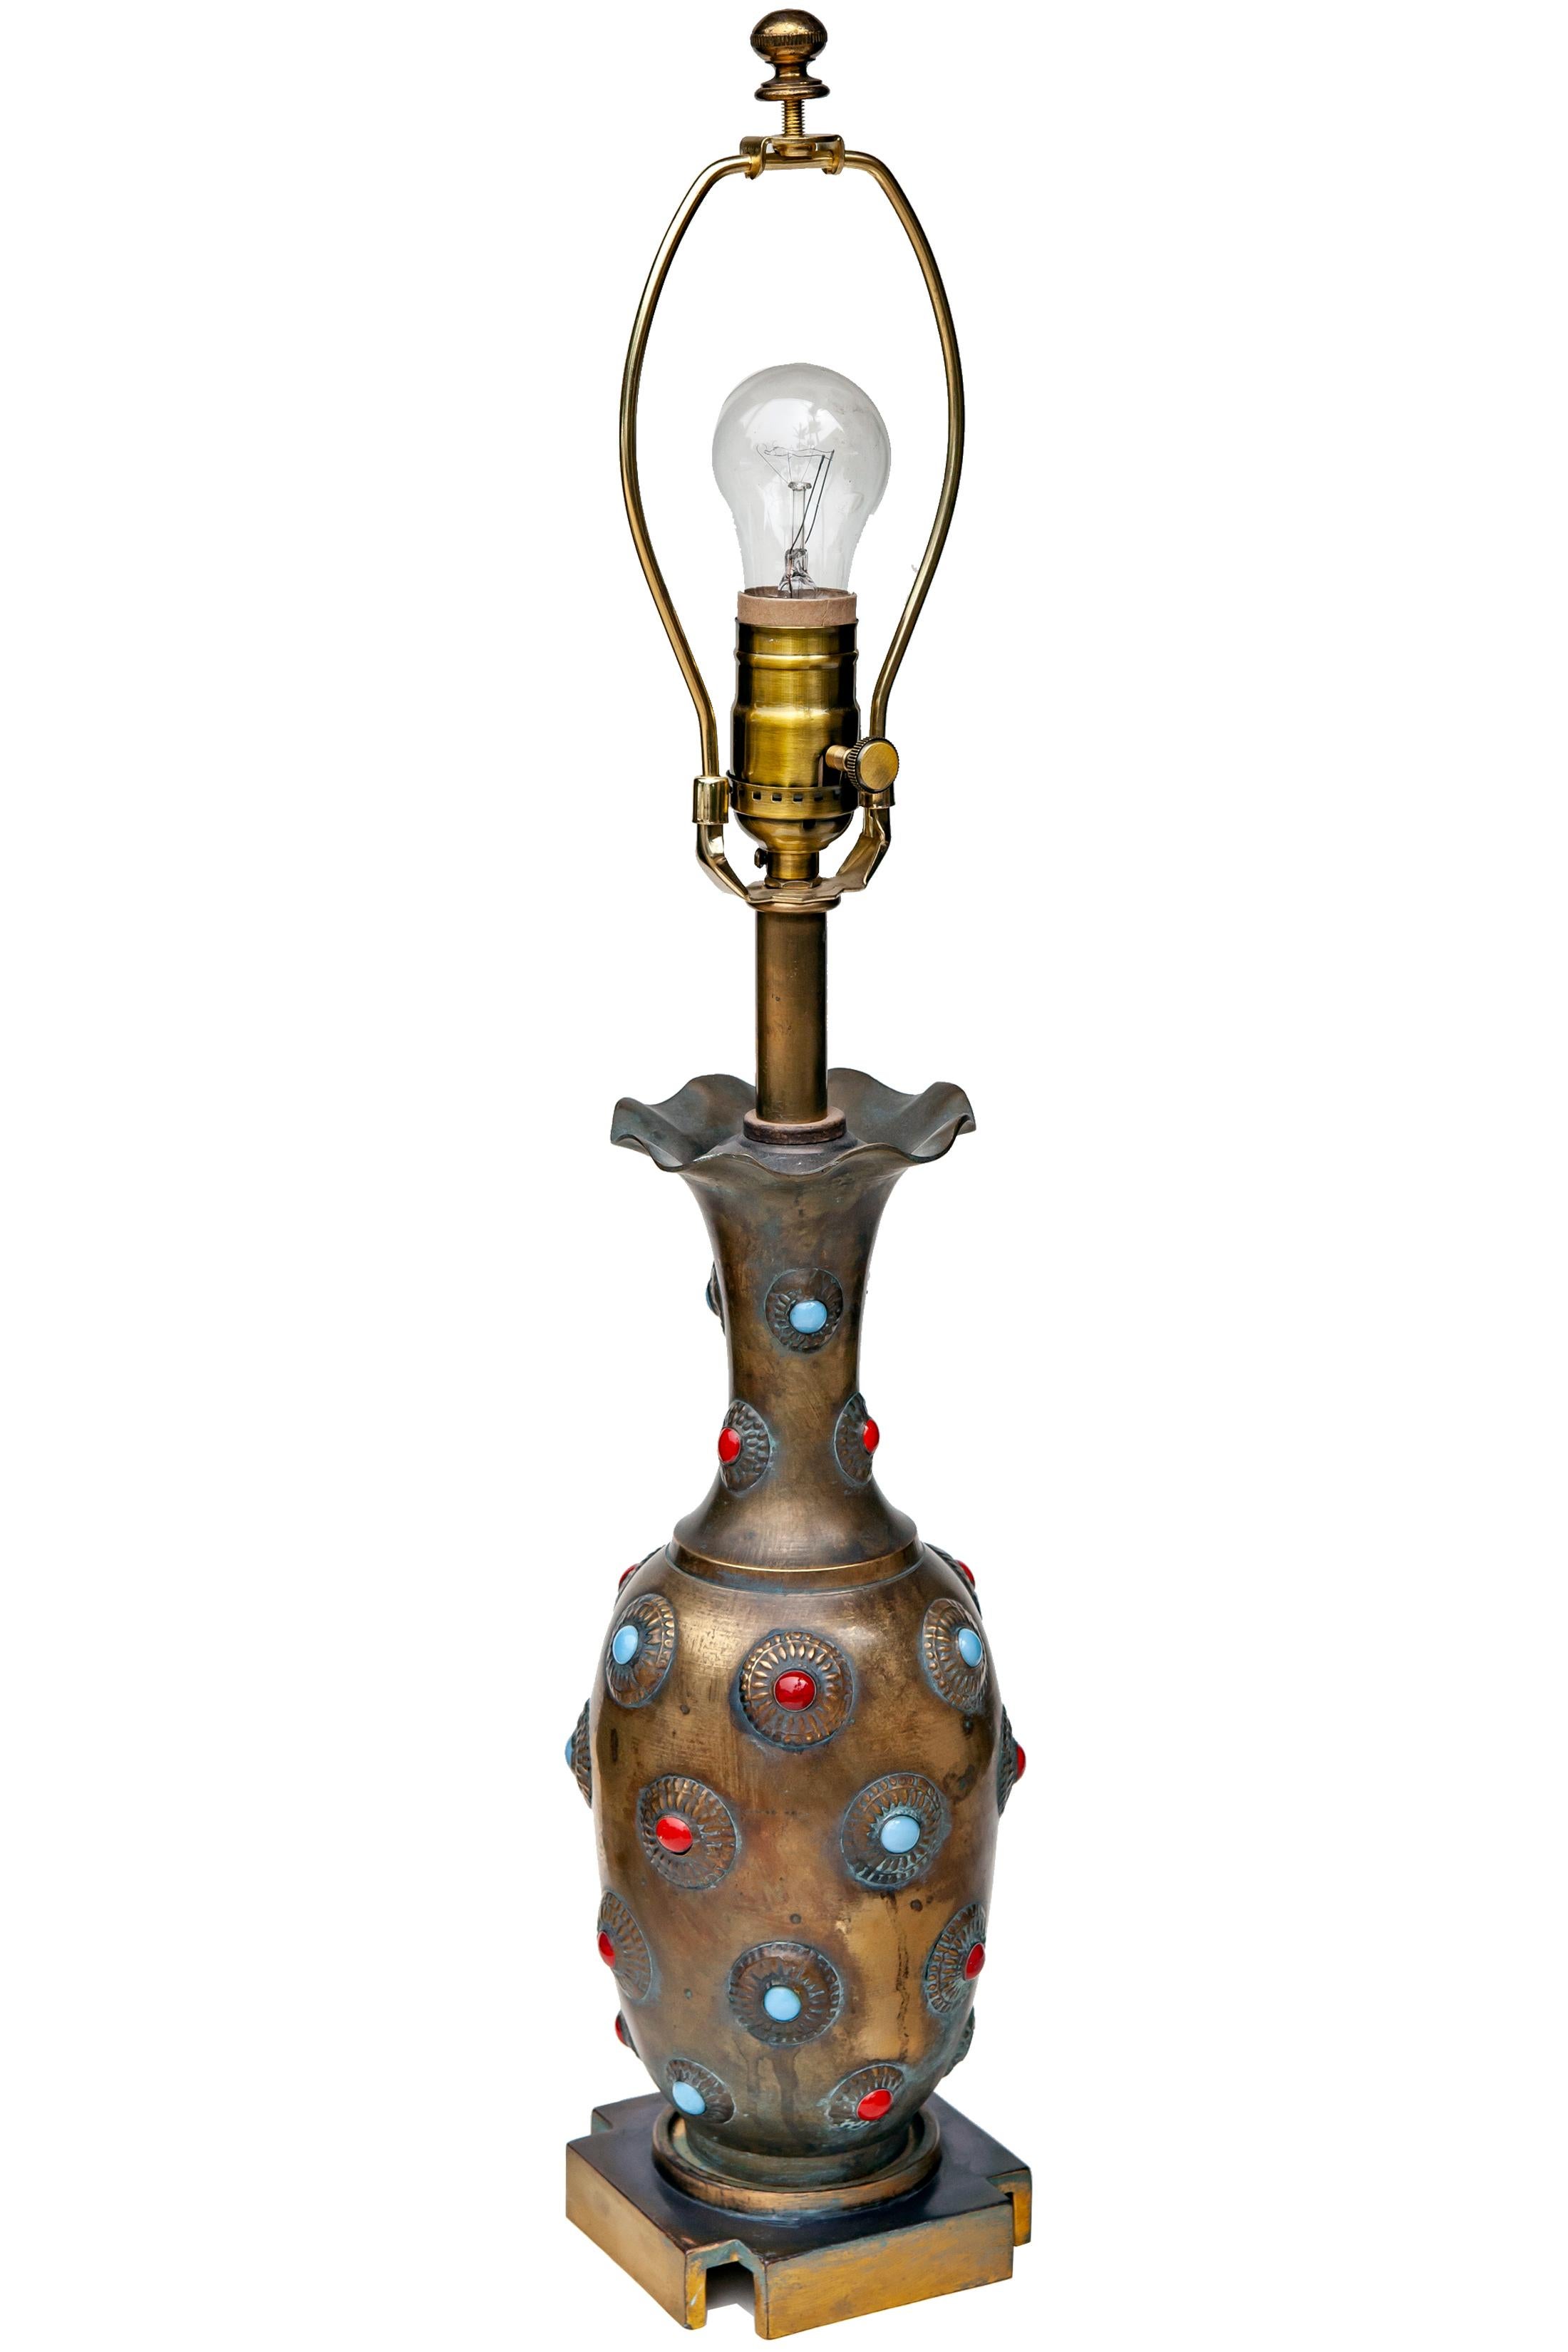 Lampe fabriquée sur mesure avec un vase en cabochon / pierres incrustées. 1 pierre est manquante. Il repose sur une lourde base carrée en laiton.
Nouveau câblage, ampoule standard recommandée. 
Patine d'âge sur le laiton.
Il n'y a qu'une seule lampe